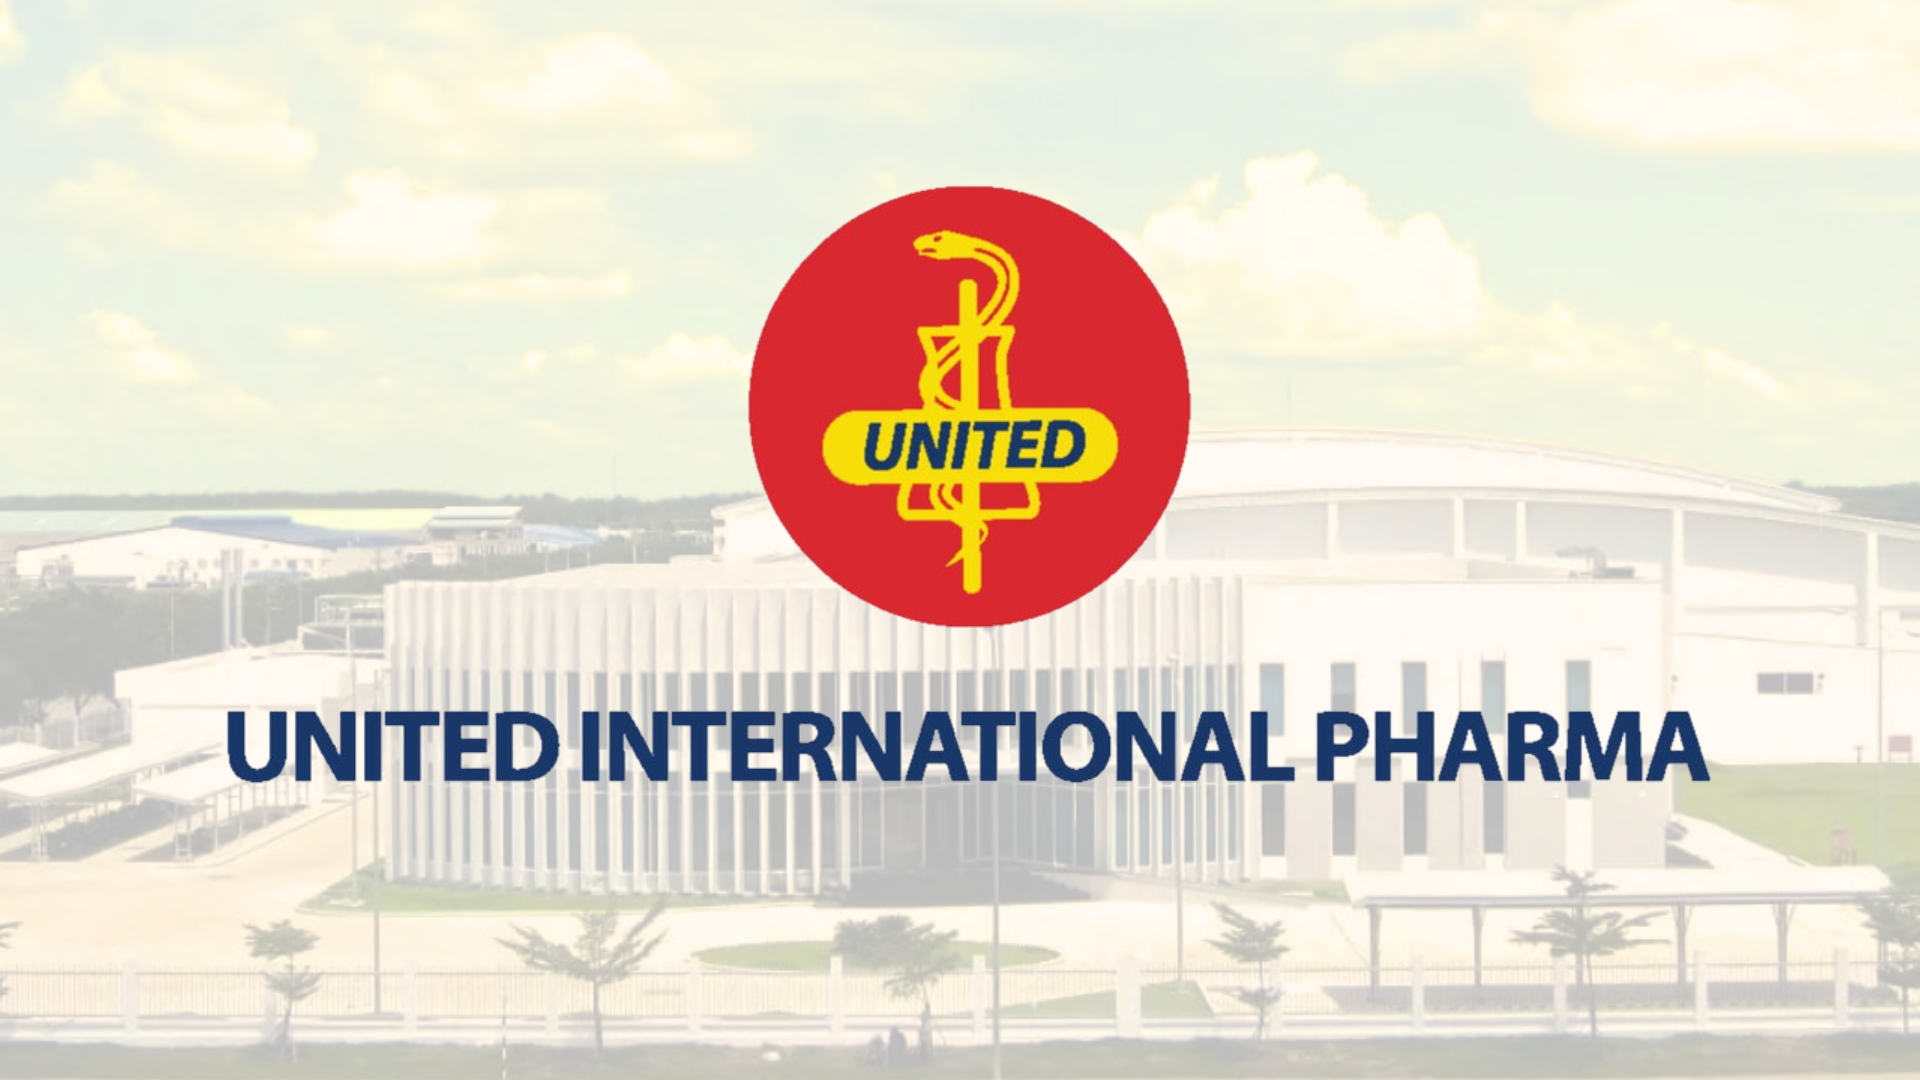 <b>United International Pharma - kỉ lục xây dựng nhà máy PIC/S-GMP trong vòng 16 tháng</b>